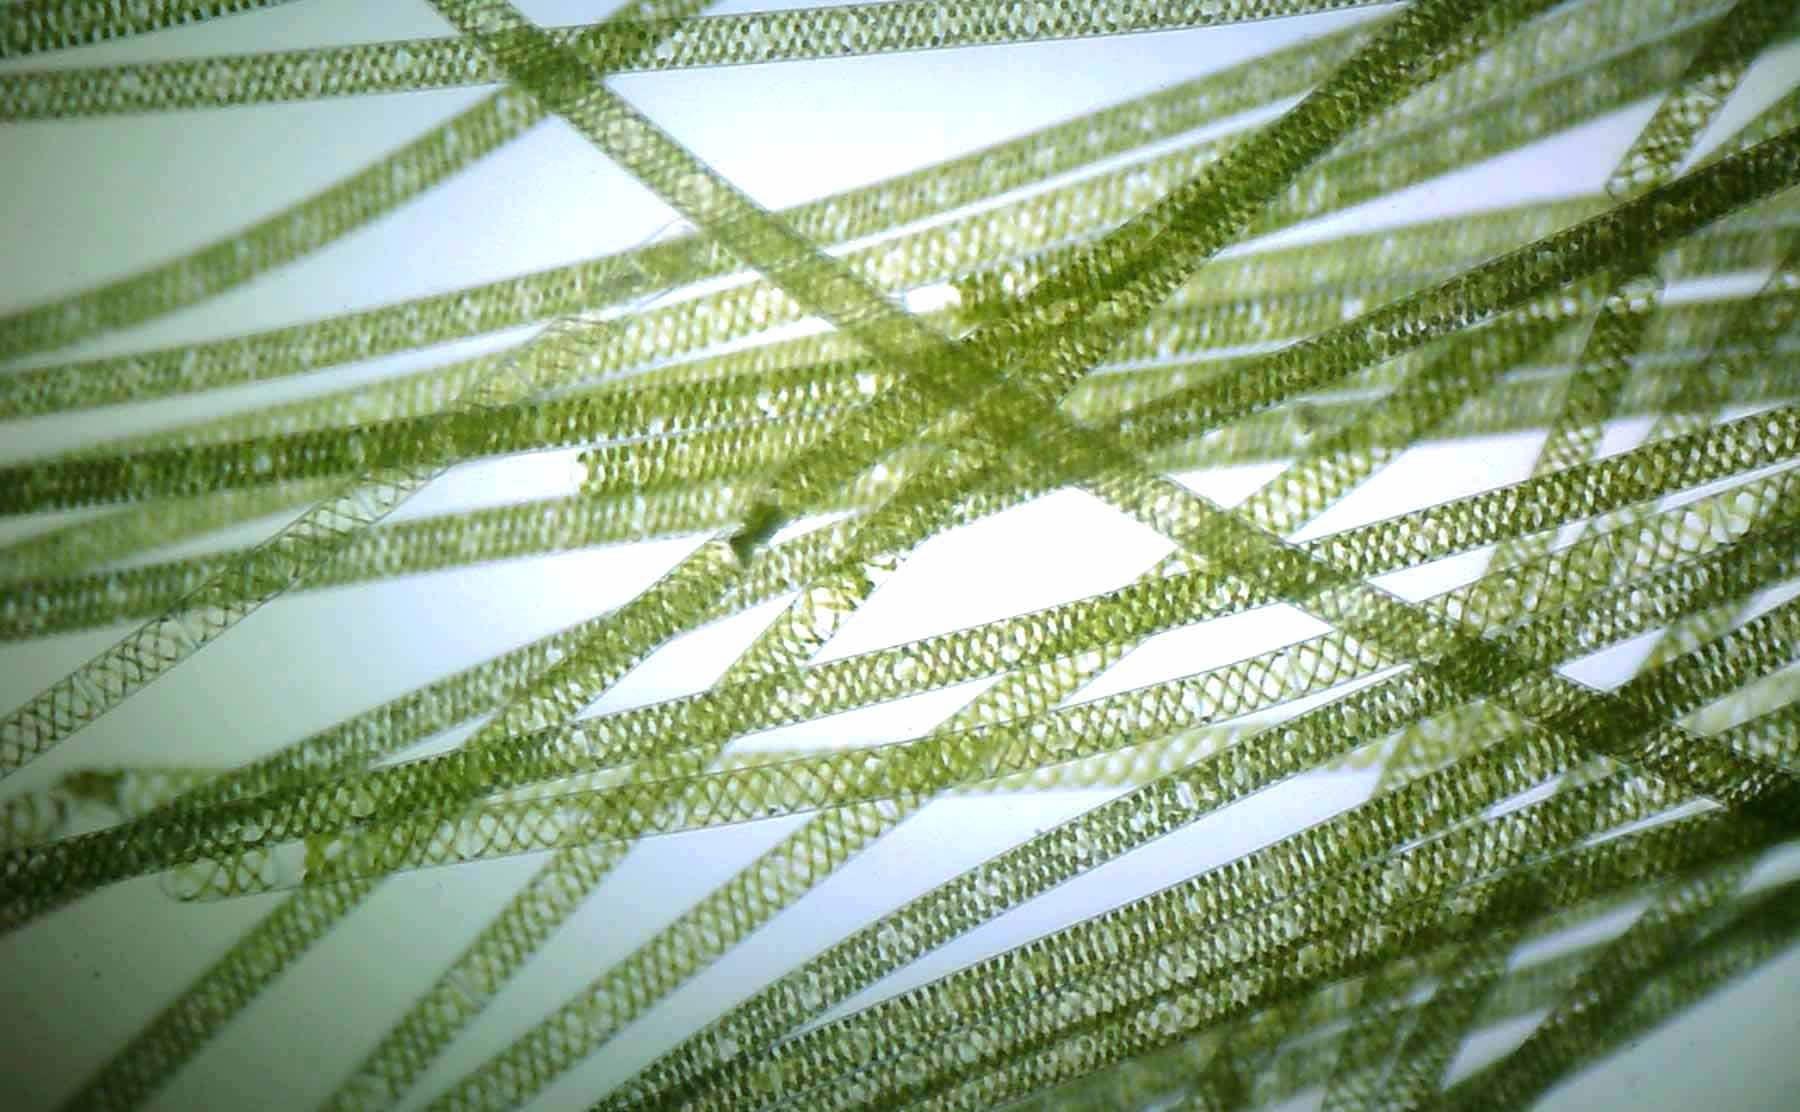 Нитчатые водоросли спирогира. Нитчатая водоросль спирогира. Многоклеточная нитчатая зелёная водоросль спирогира. Водоросль спирогира под микроскопом. Многоклеточные зеленые водоросли спирогира.